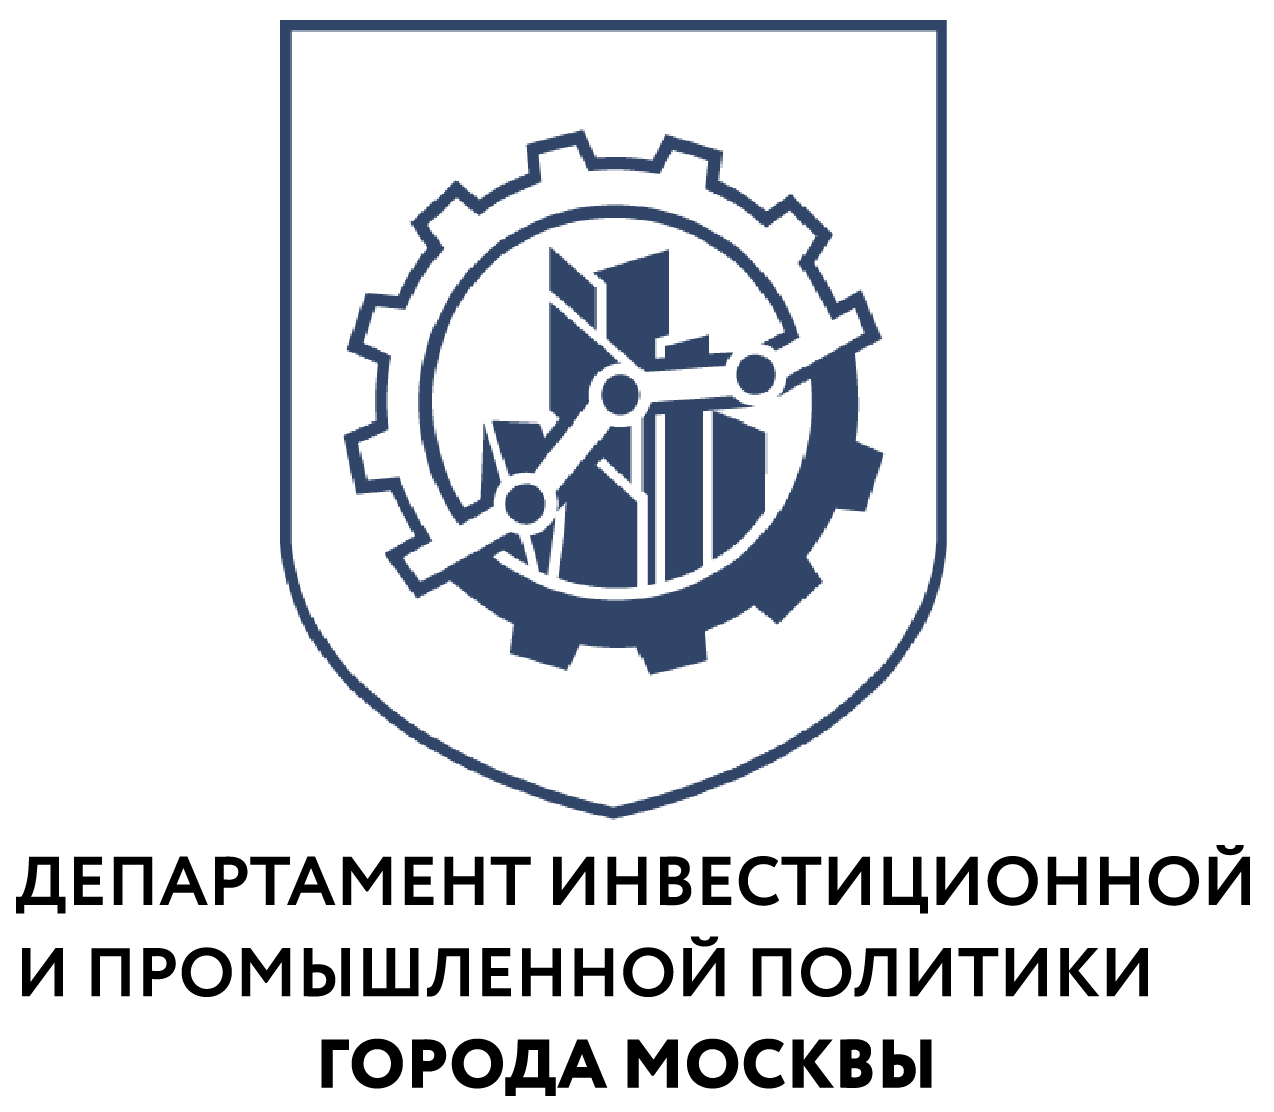 Около 880 рабочих мест открыли производители медизделий в ОЭЗ «Технополис Москва» - фото 1